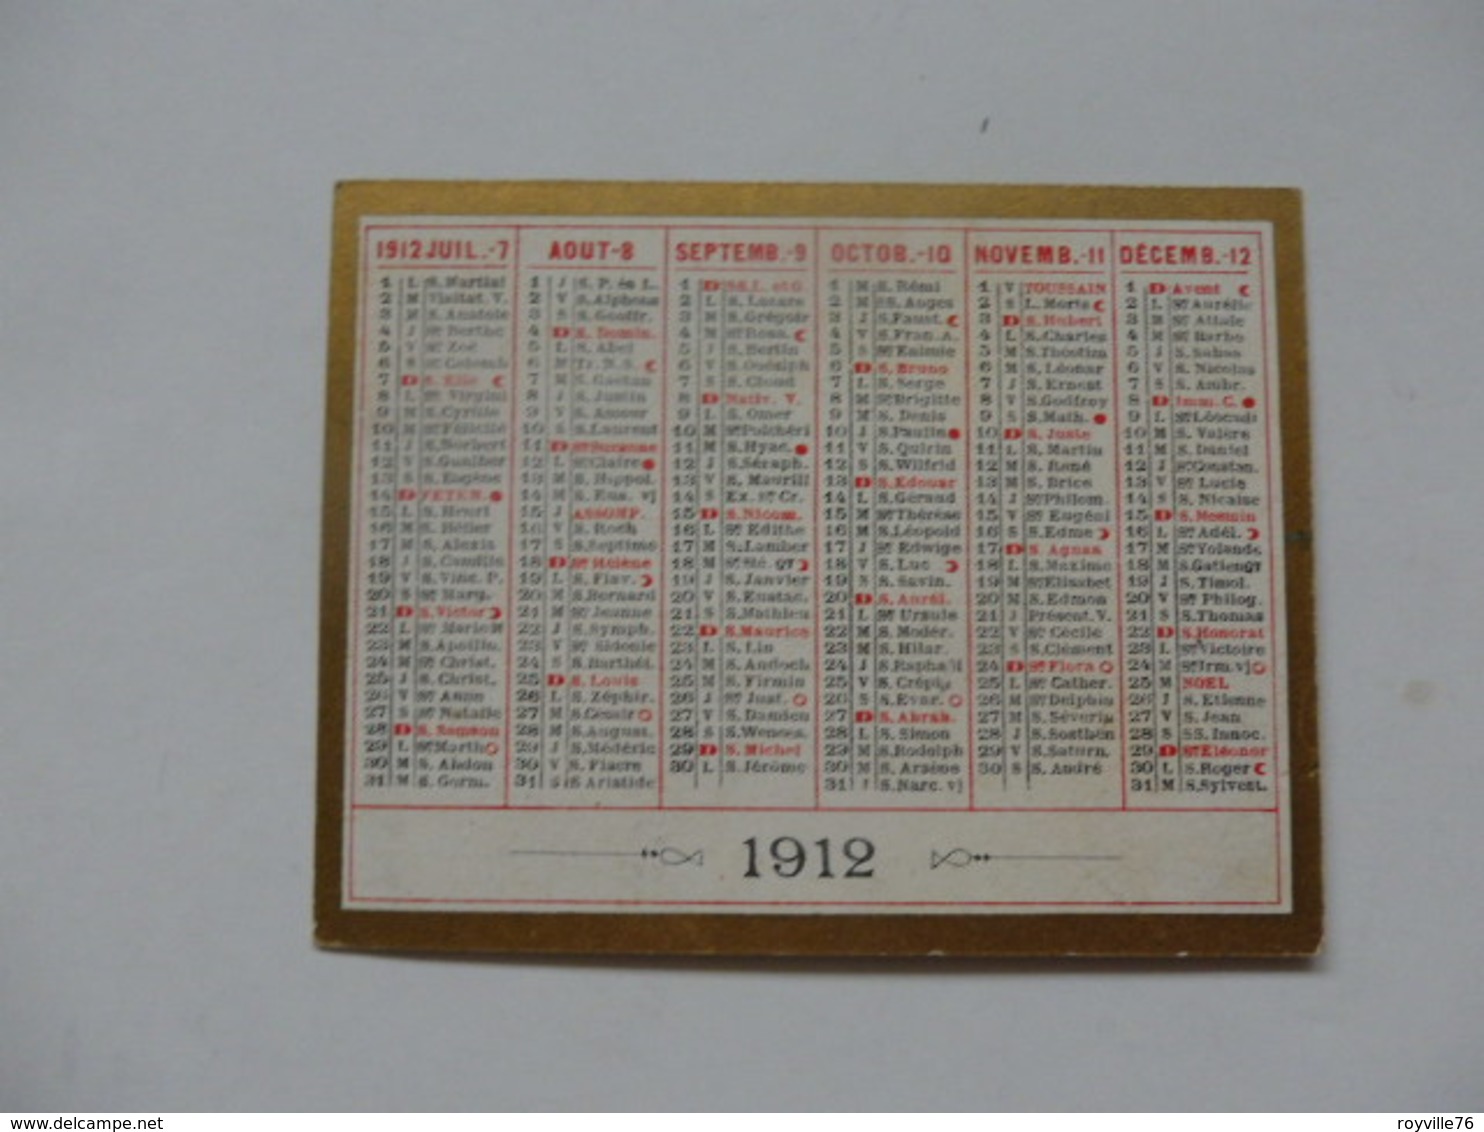 Calendrier De 1912. - Small : 1901-20